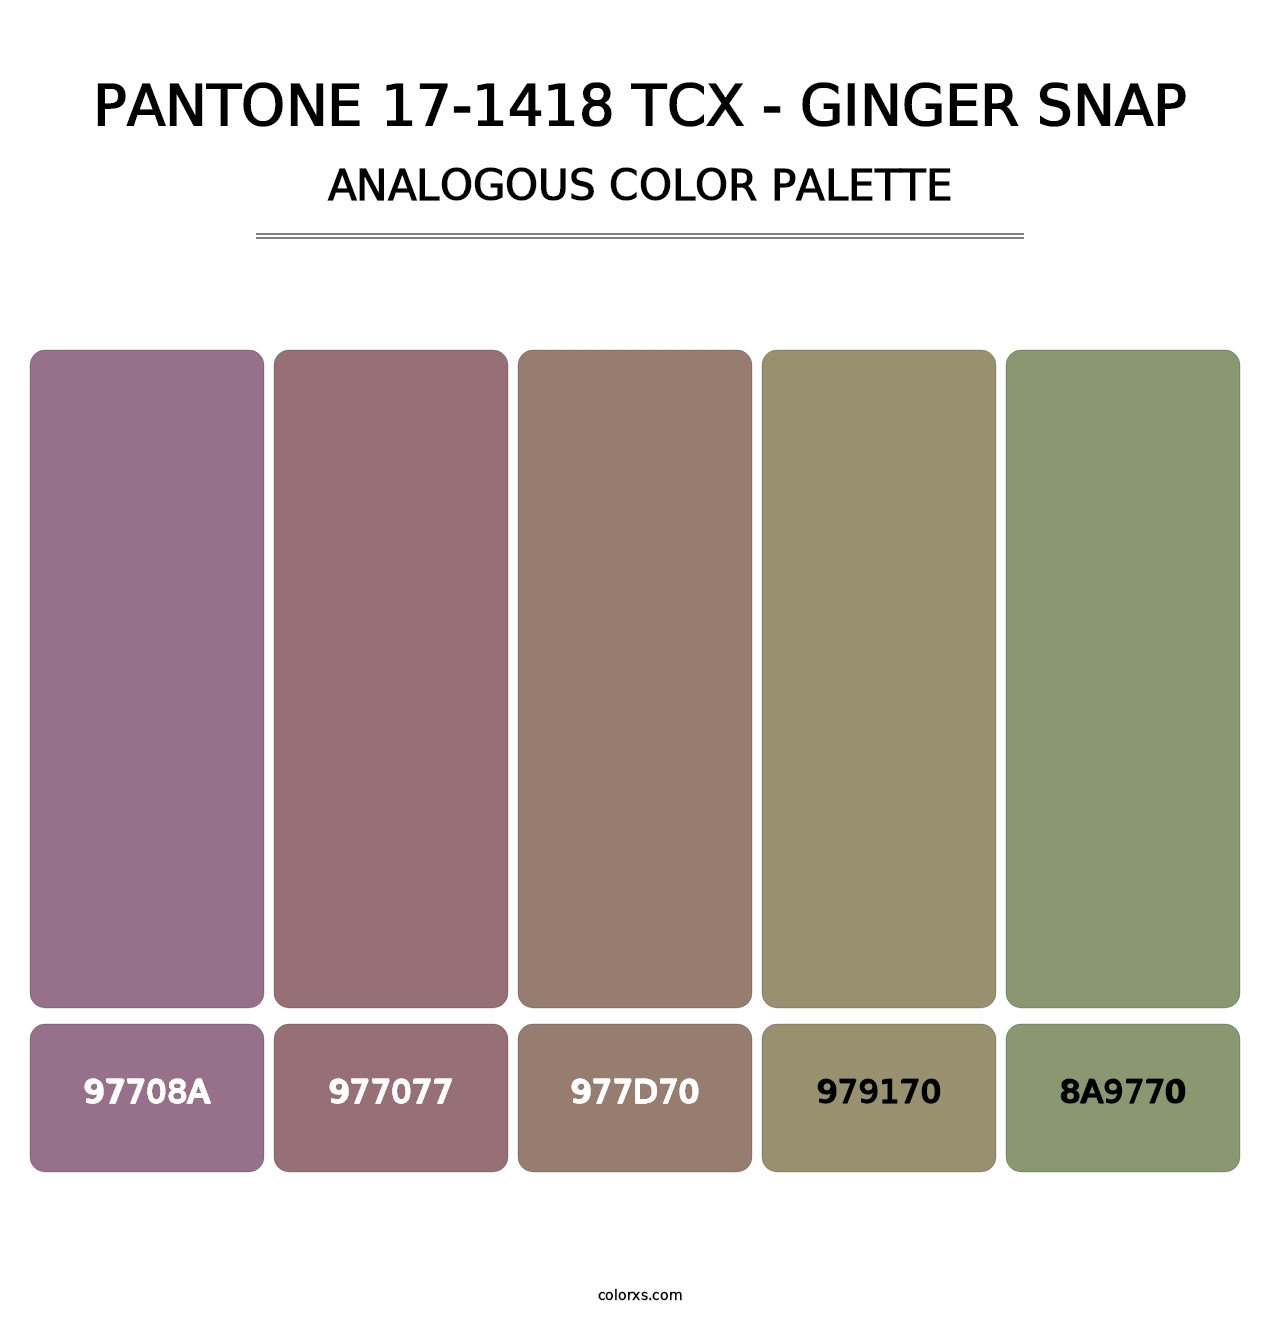 PANTONE 17-1418 TCX - Ginger Snap - Analogous Color Palette